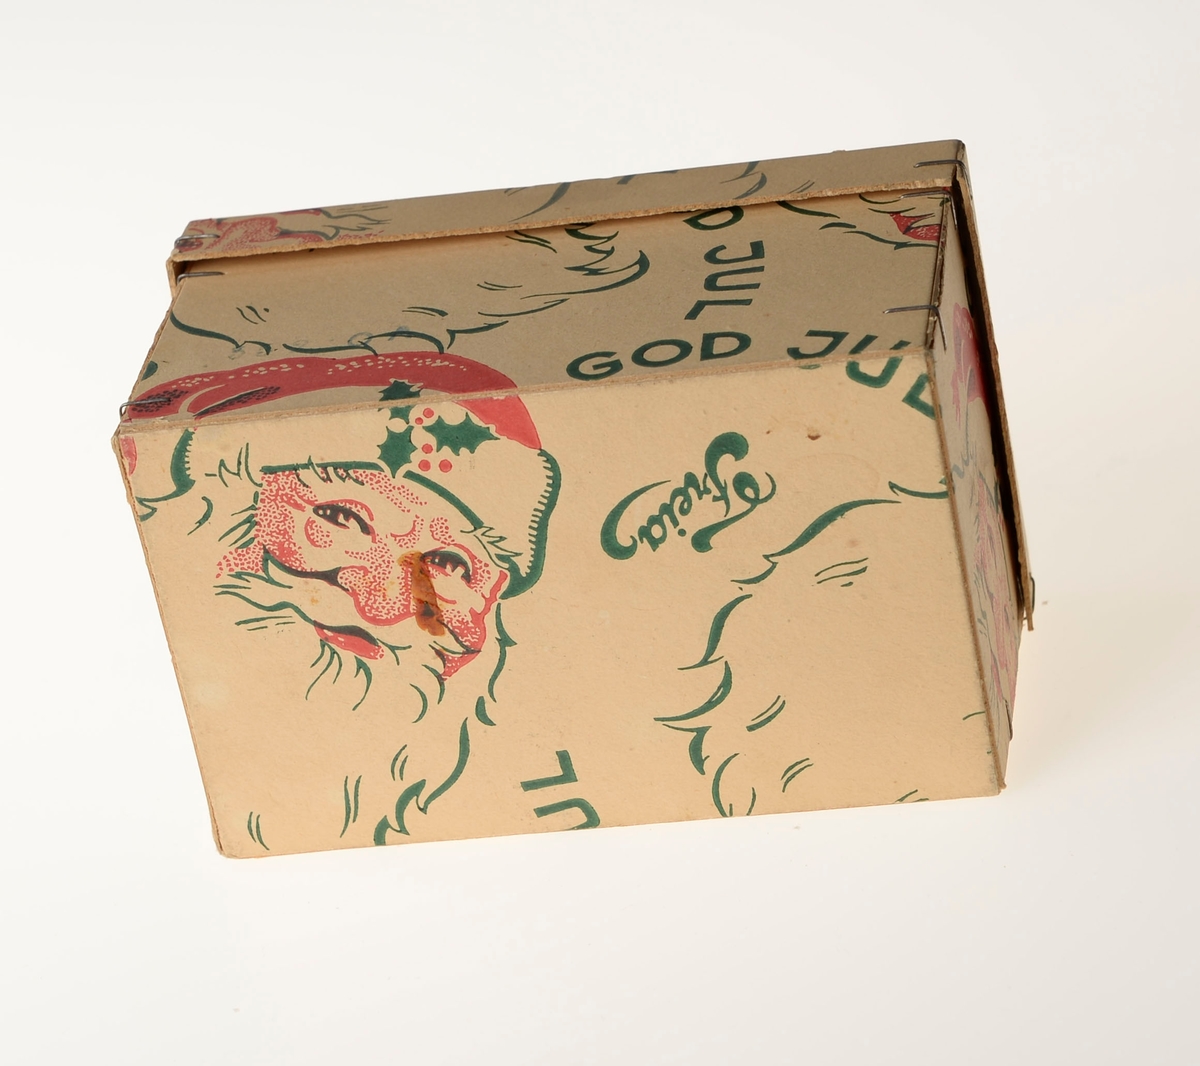 En liten pappeske med lokk som har vært emballasje for en marsipangris. 
På esken er det logoen til Freia, julenissemotiv og så står det God Jul. Inni esken ligger det silkepapir (antageligvis originalt).